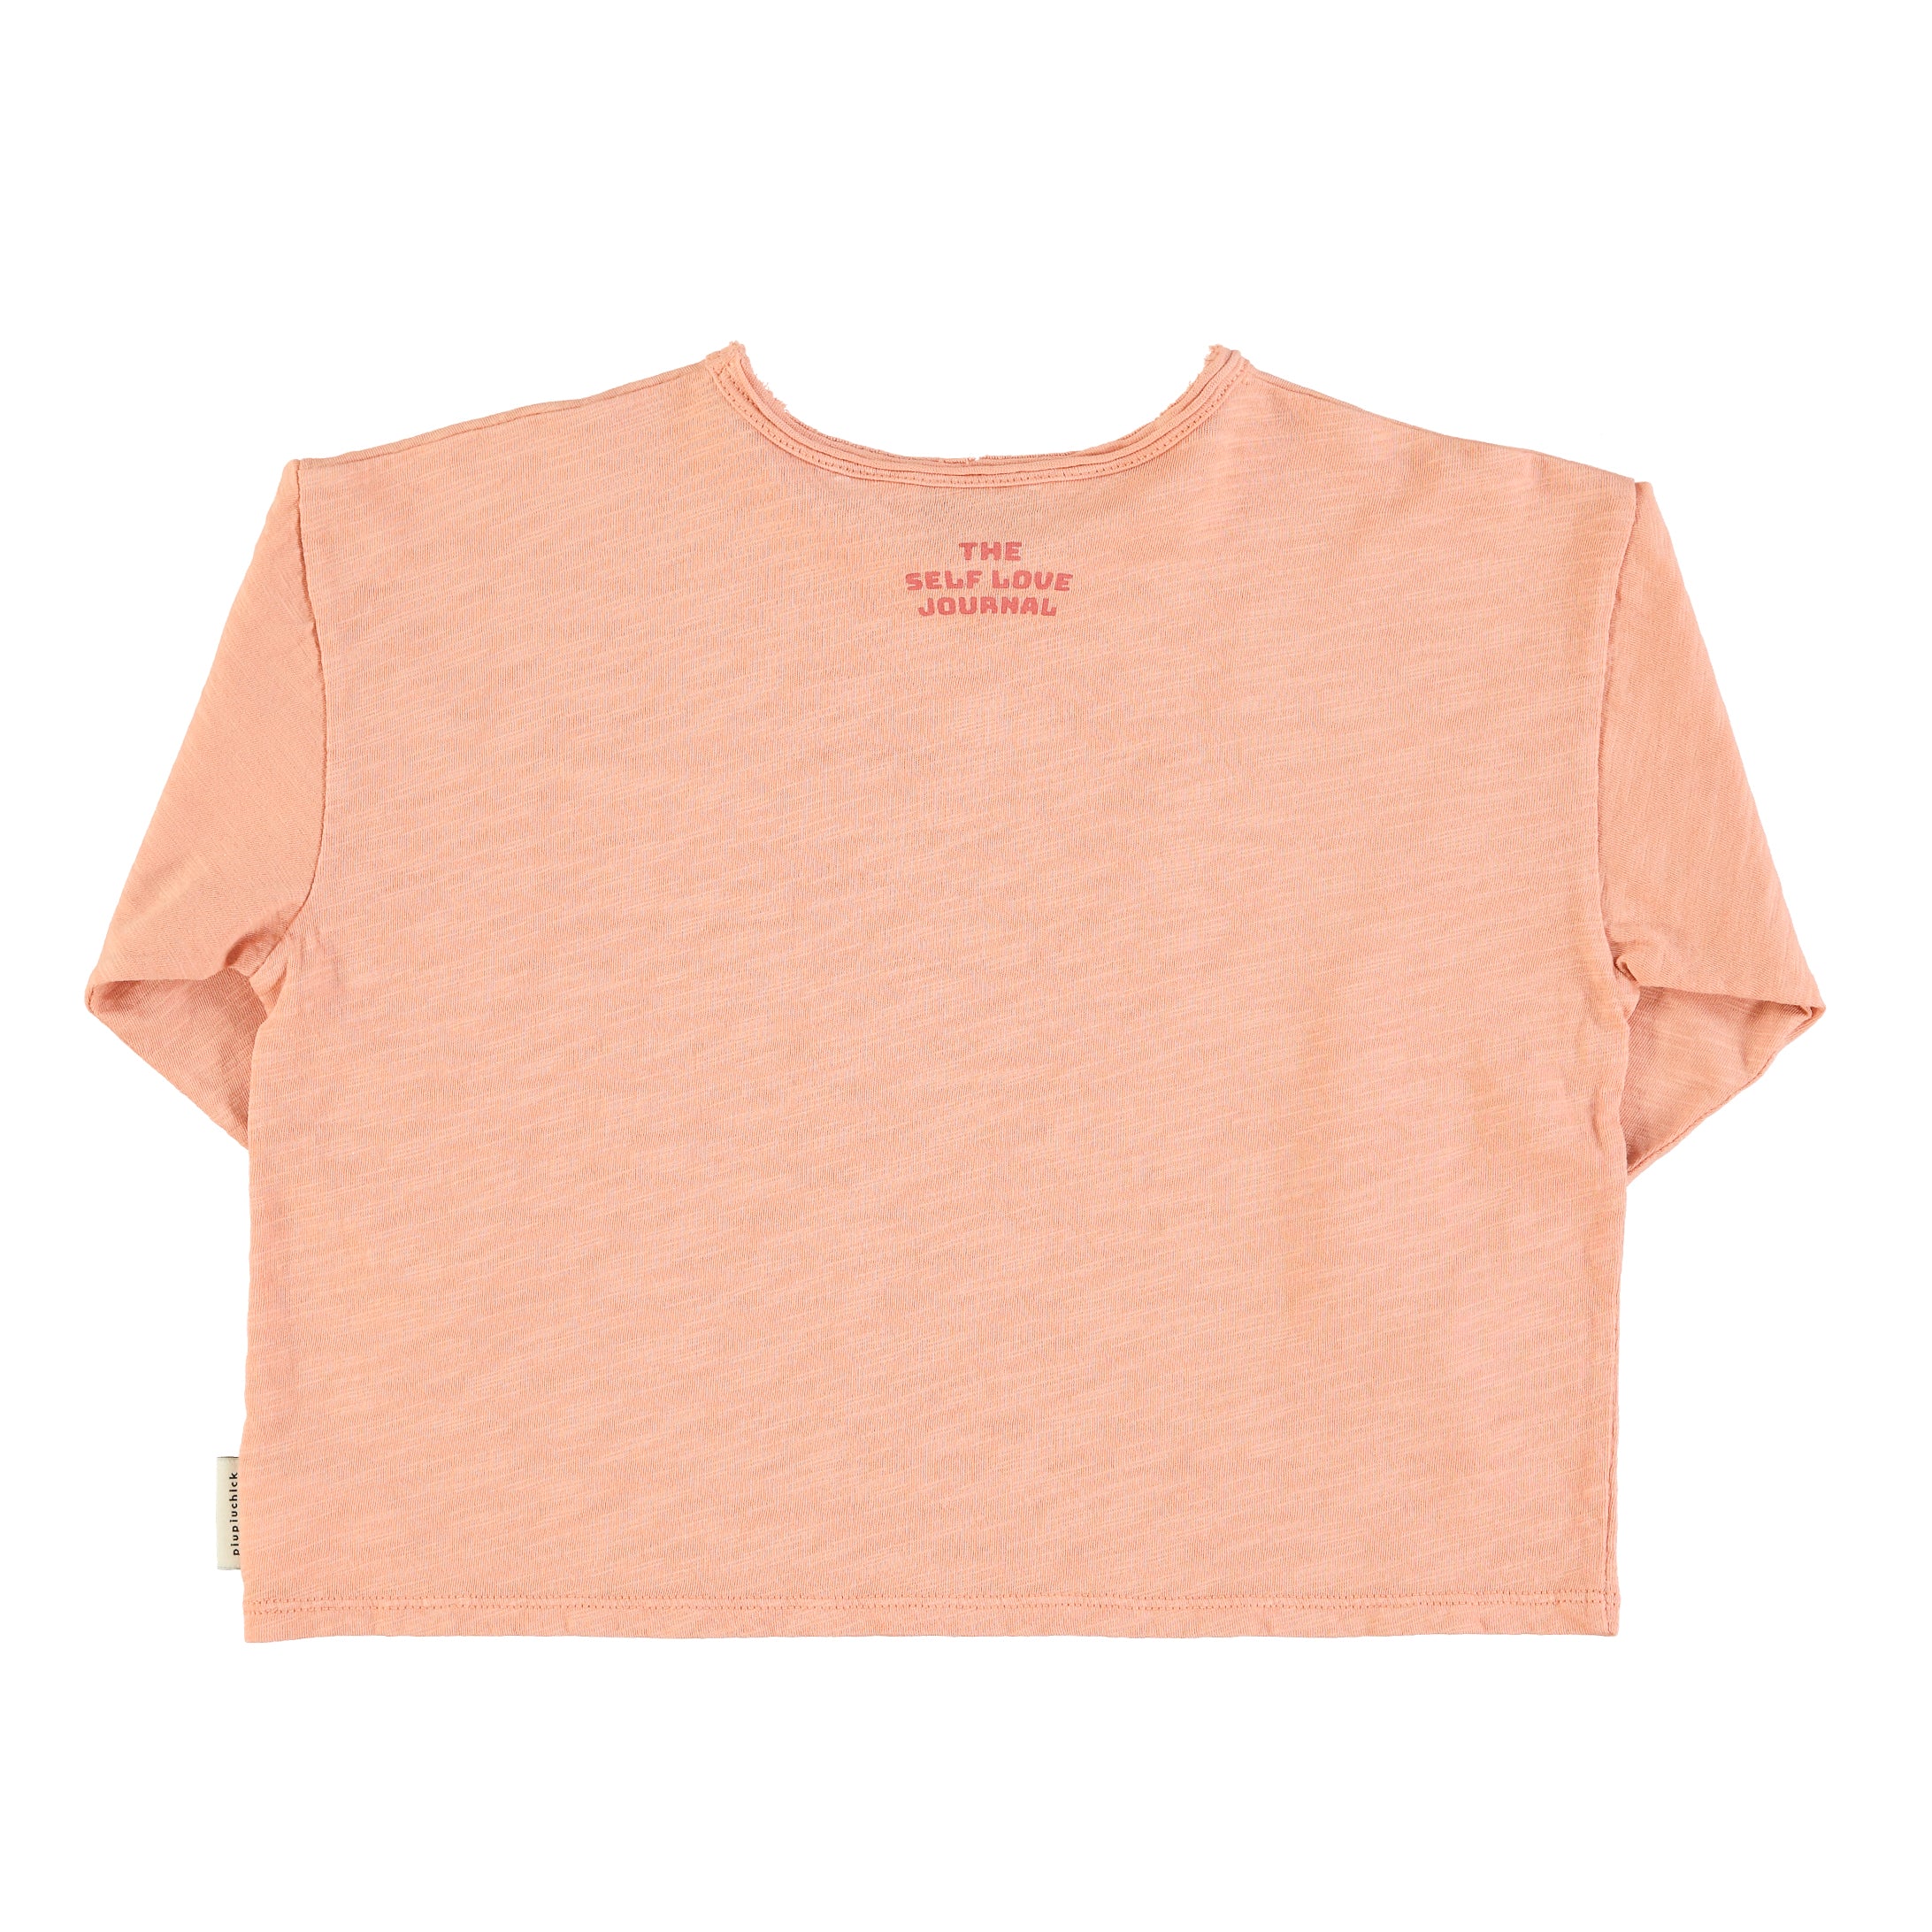 Piupiuchick - Kinder Shirt rosa besame mucho